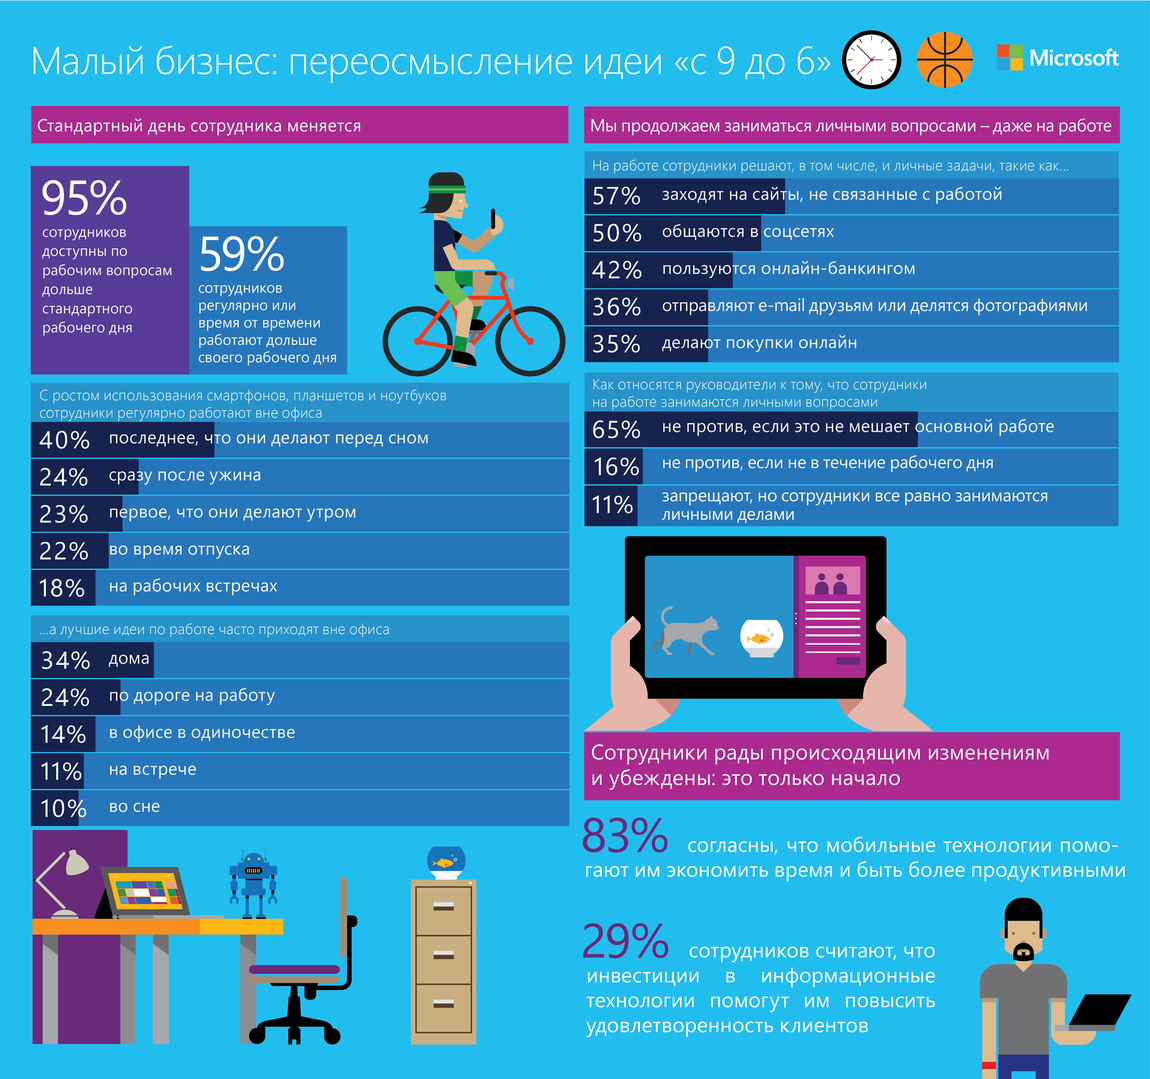 83% сотрудников украинских компаний считают, что мобильные технологии помогают им быть продуктивнее